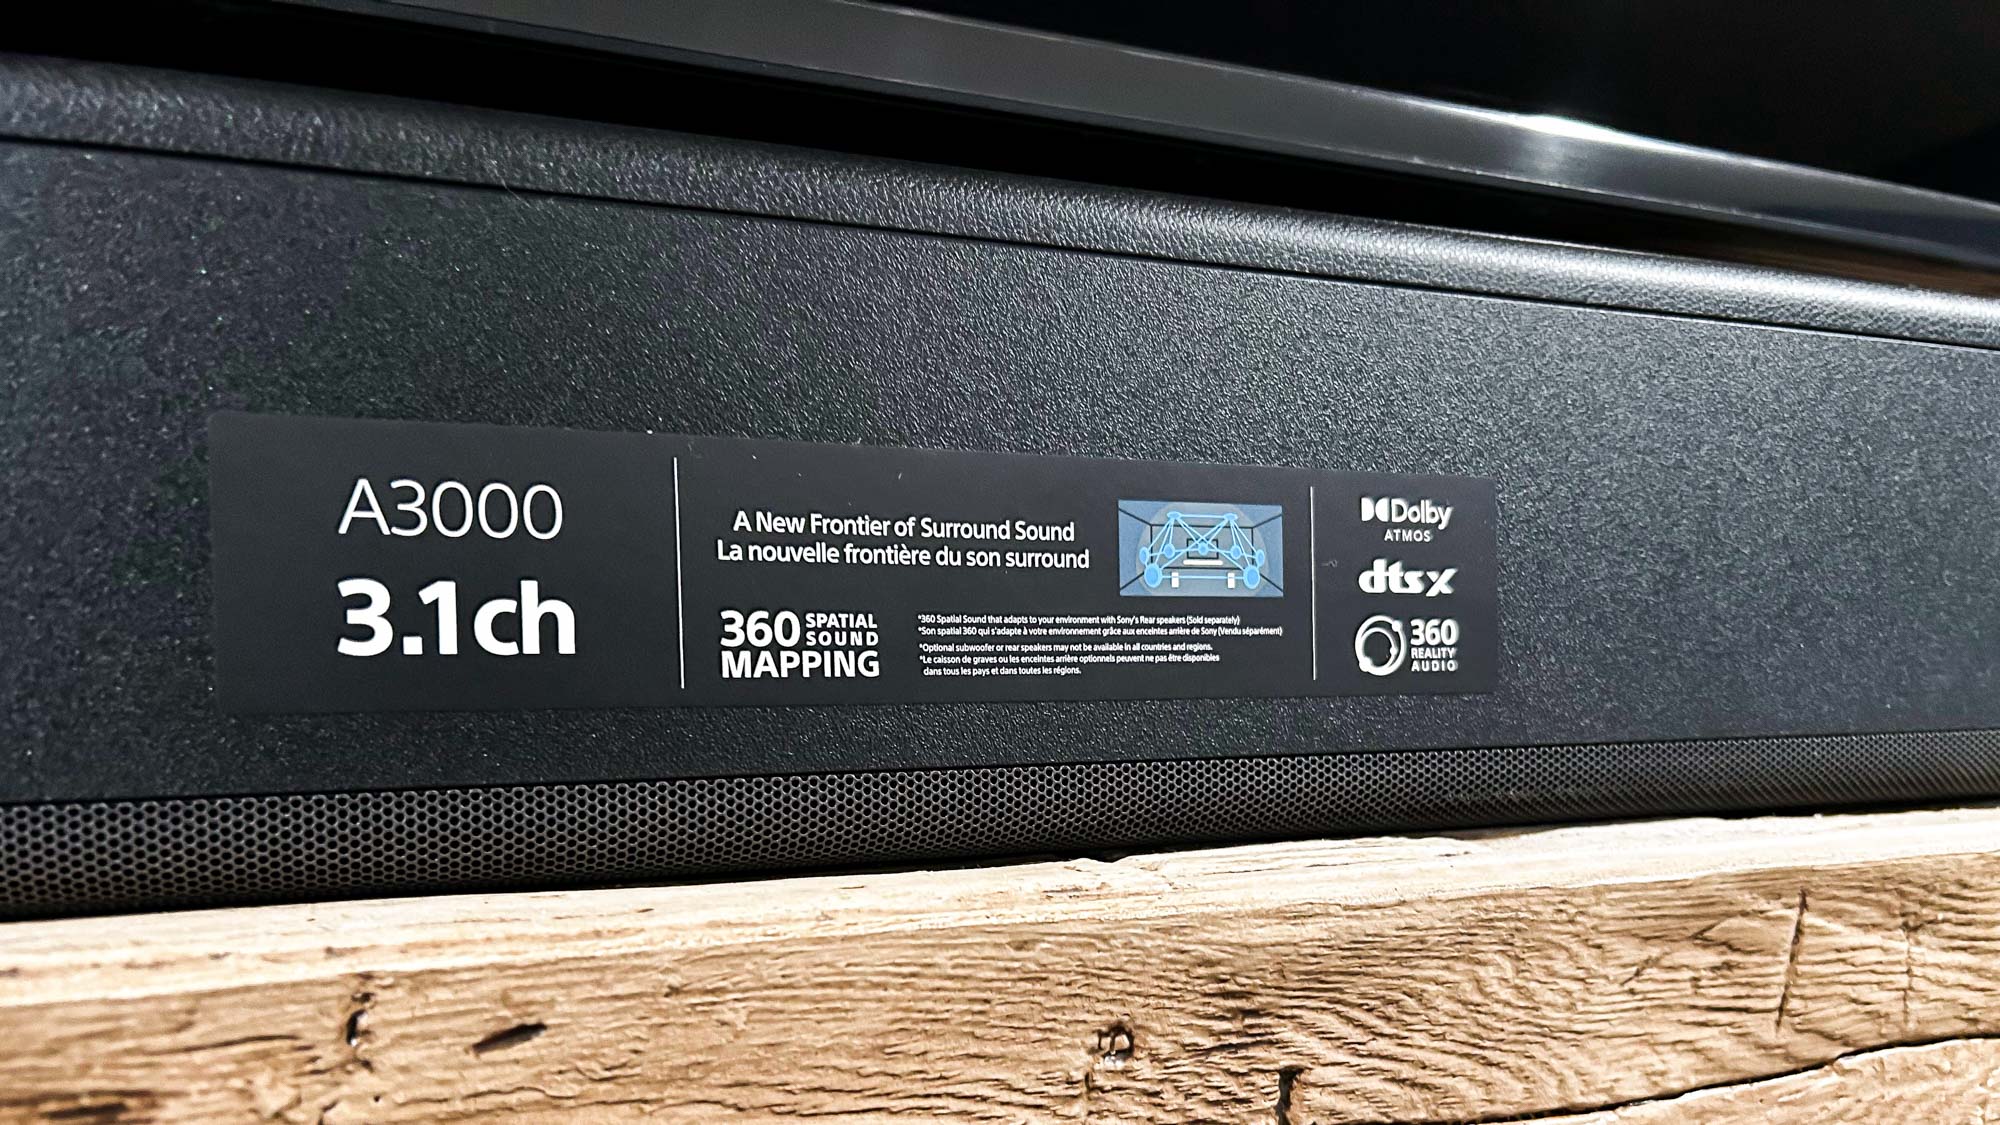 Barra de sonido Sony HT-A3000 montada debajo del televisor